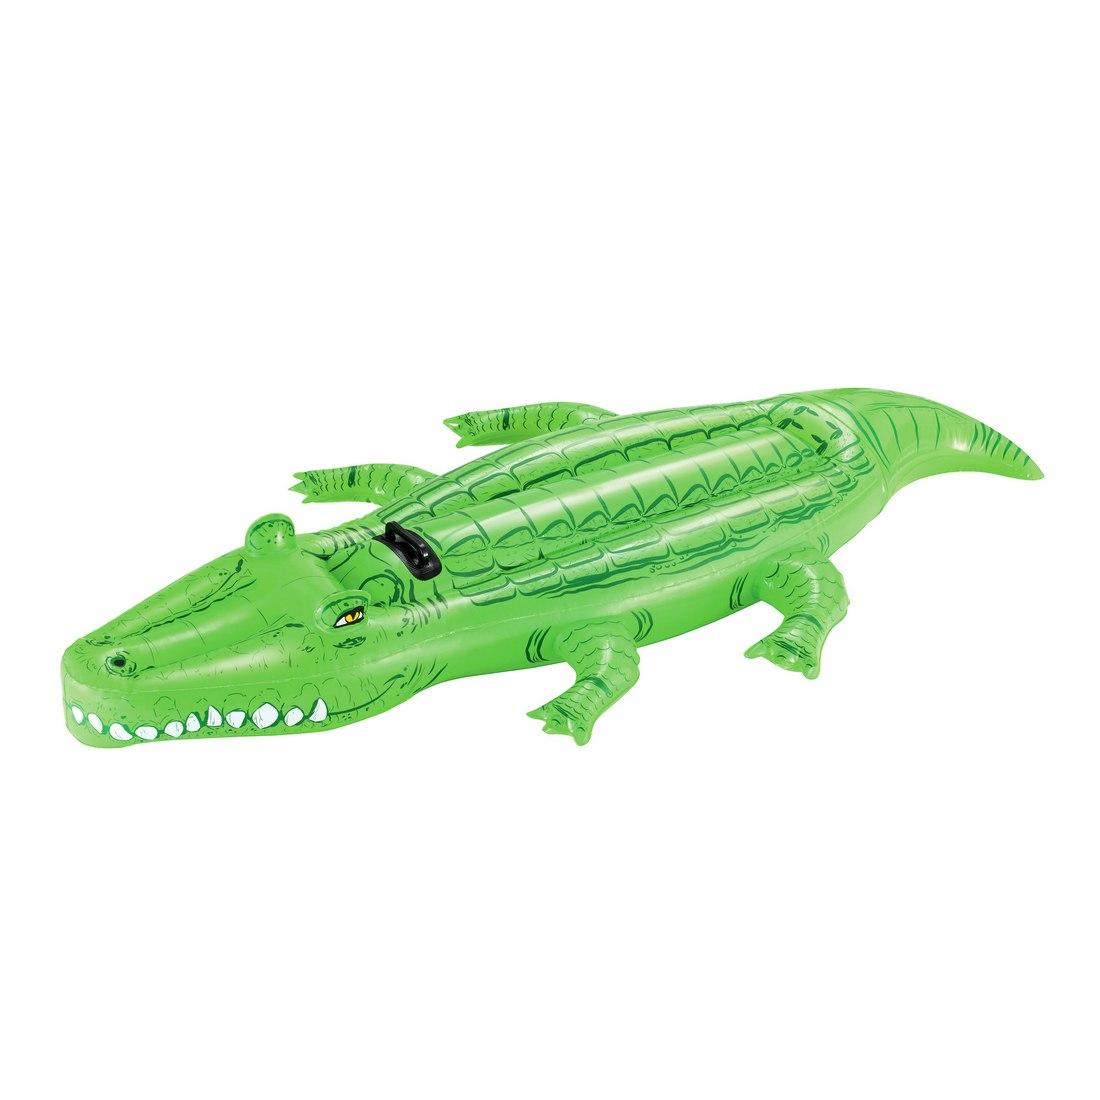 Надувная игрушка для катания верхом Крокодил (Crocodile) 203 х 117 см.